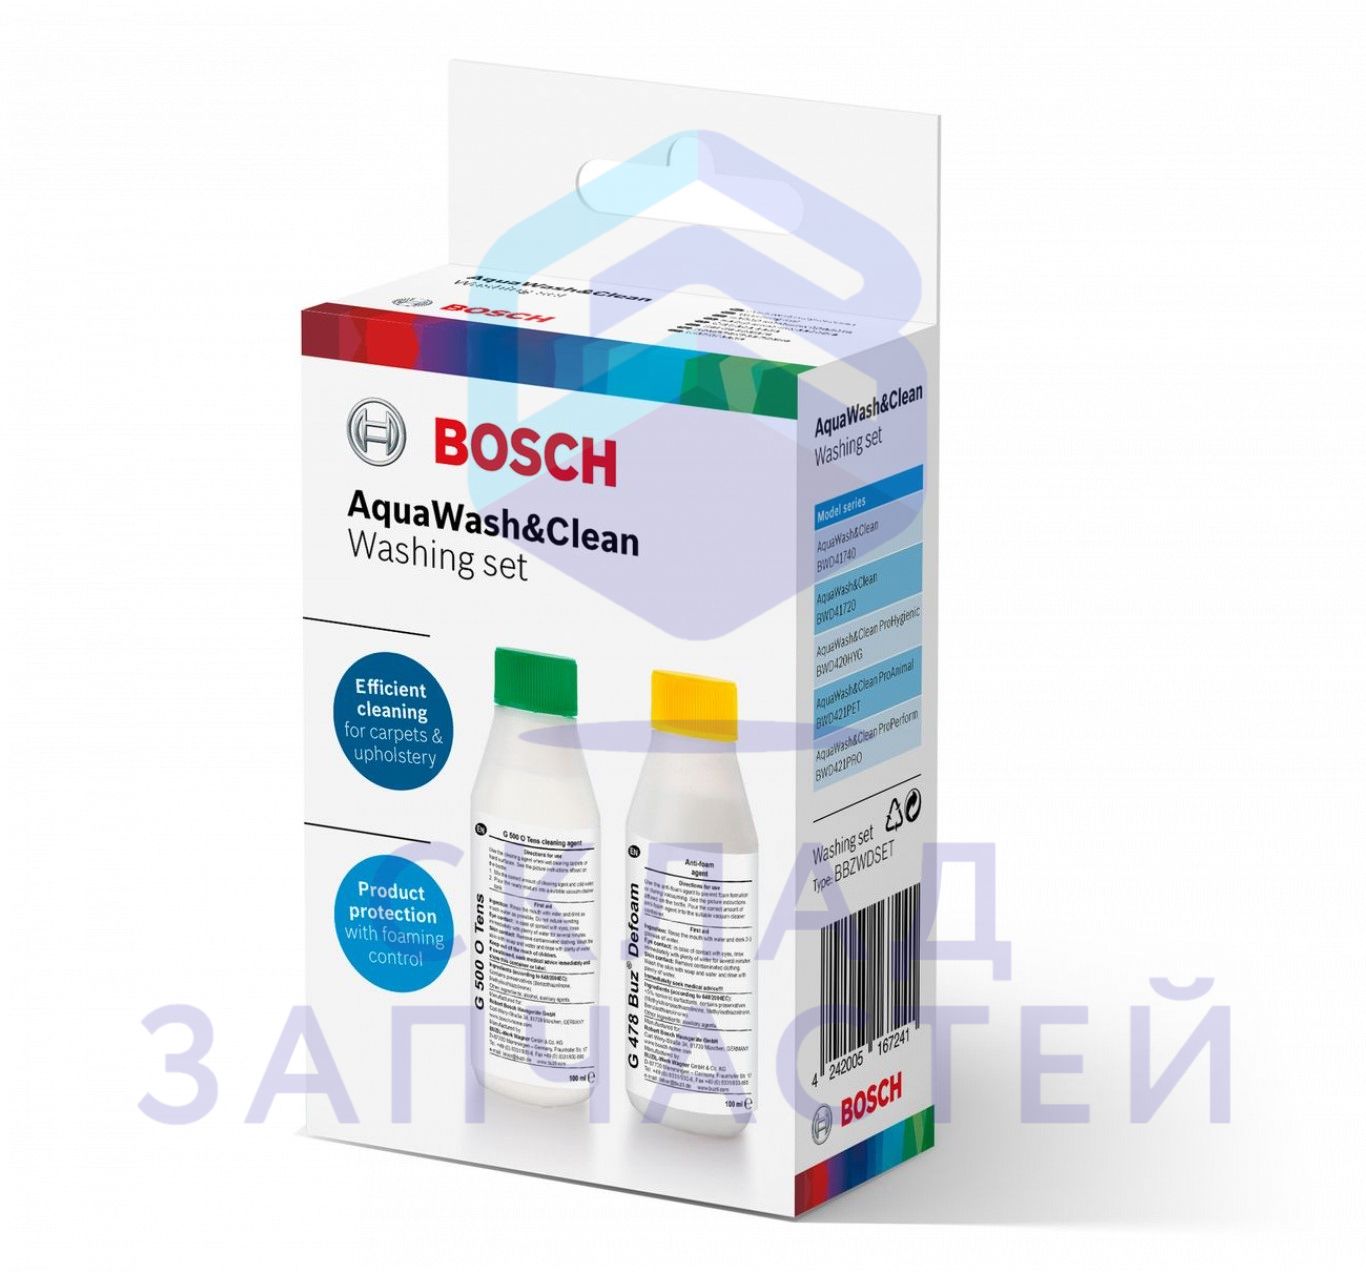 00312086 Bosch оригинал, bbzwdset набор средств aquawash&clean для моющих пылесосов: шампунь g500 + пеногаситель g478 d